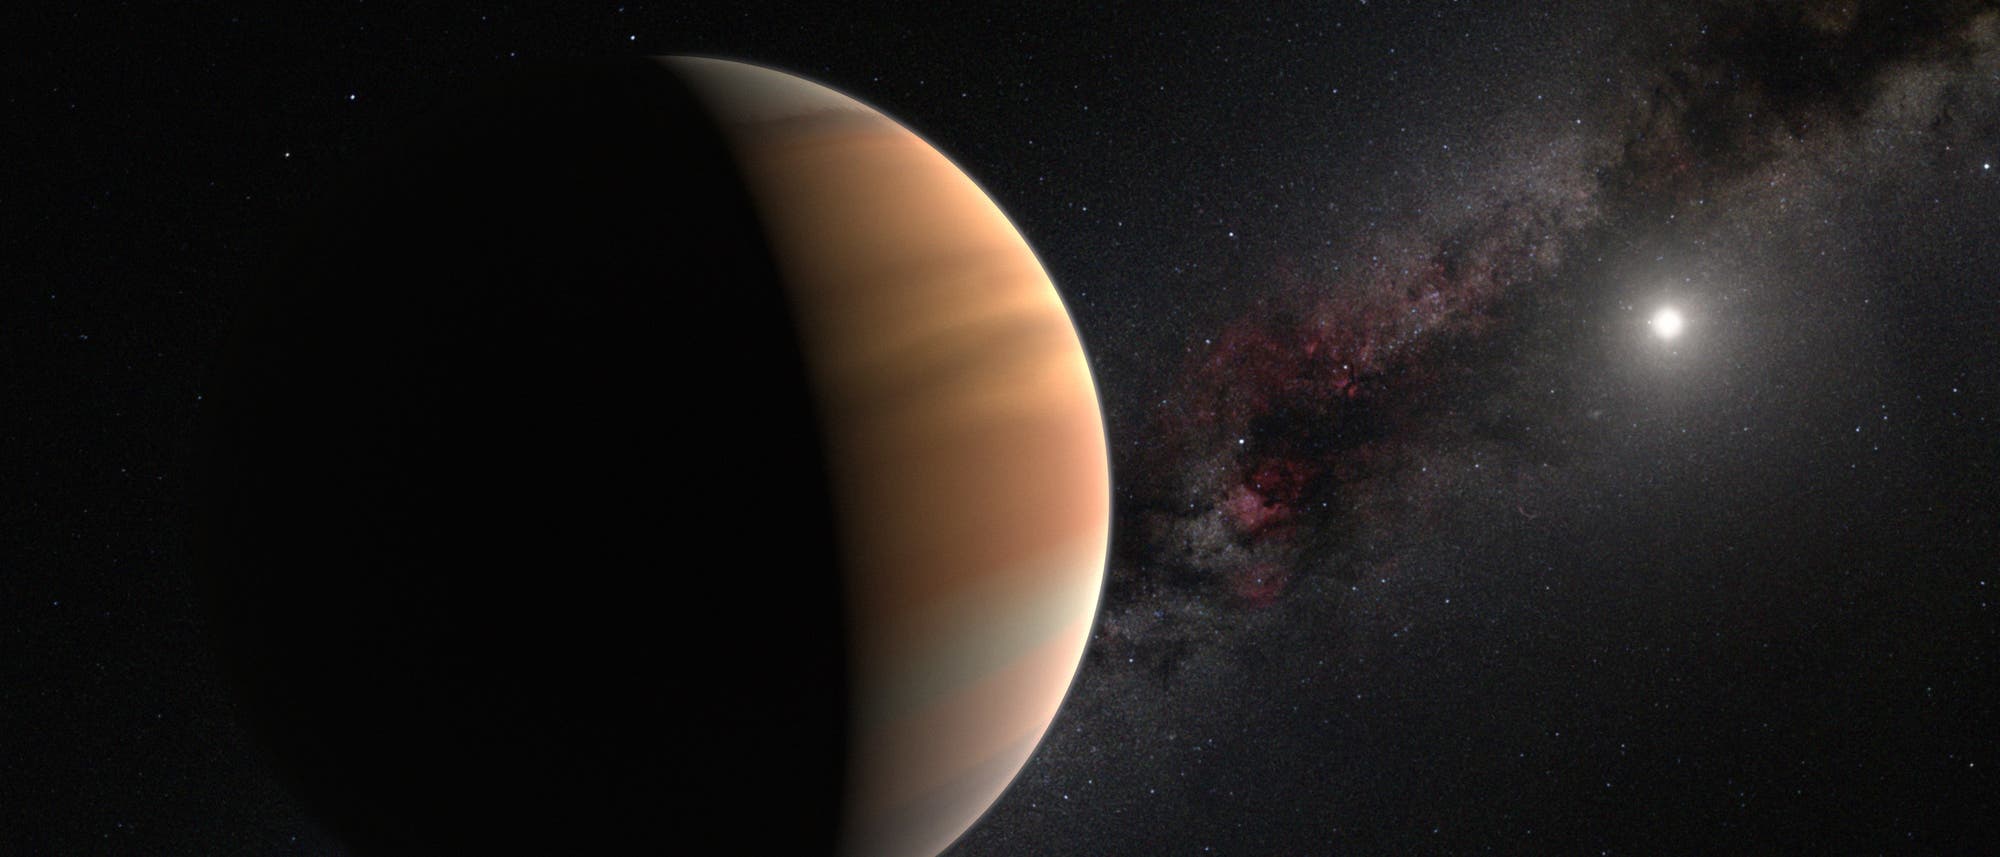 Künstlerische Darstellung eines jupiterähnlichen Exoplaneten